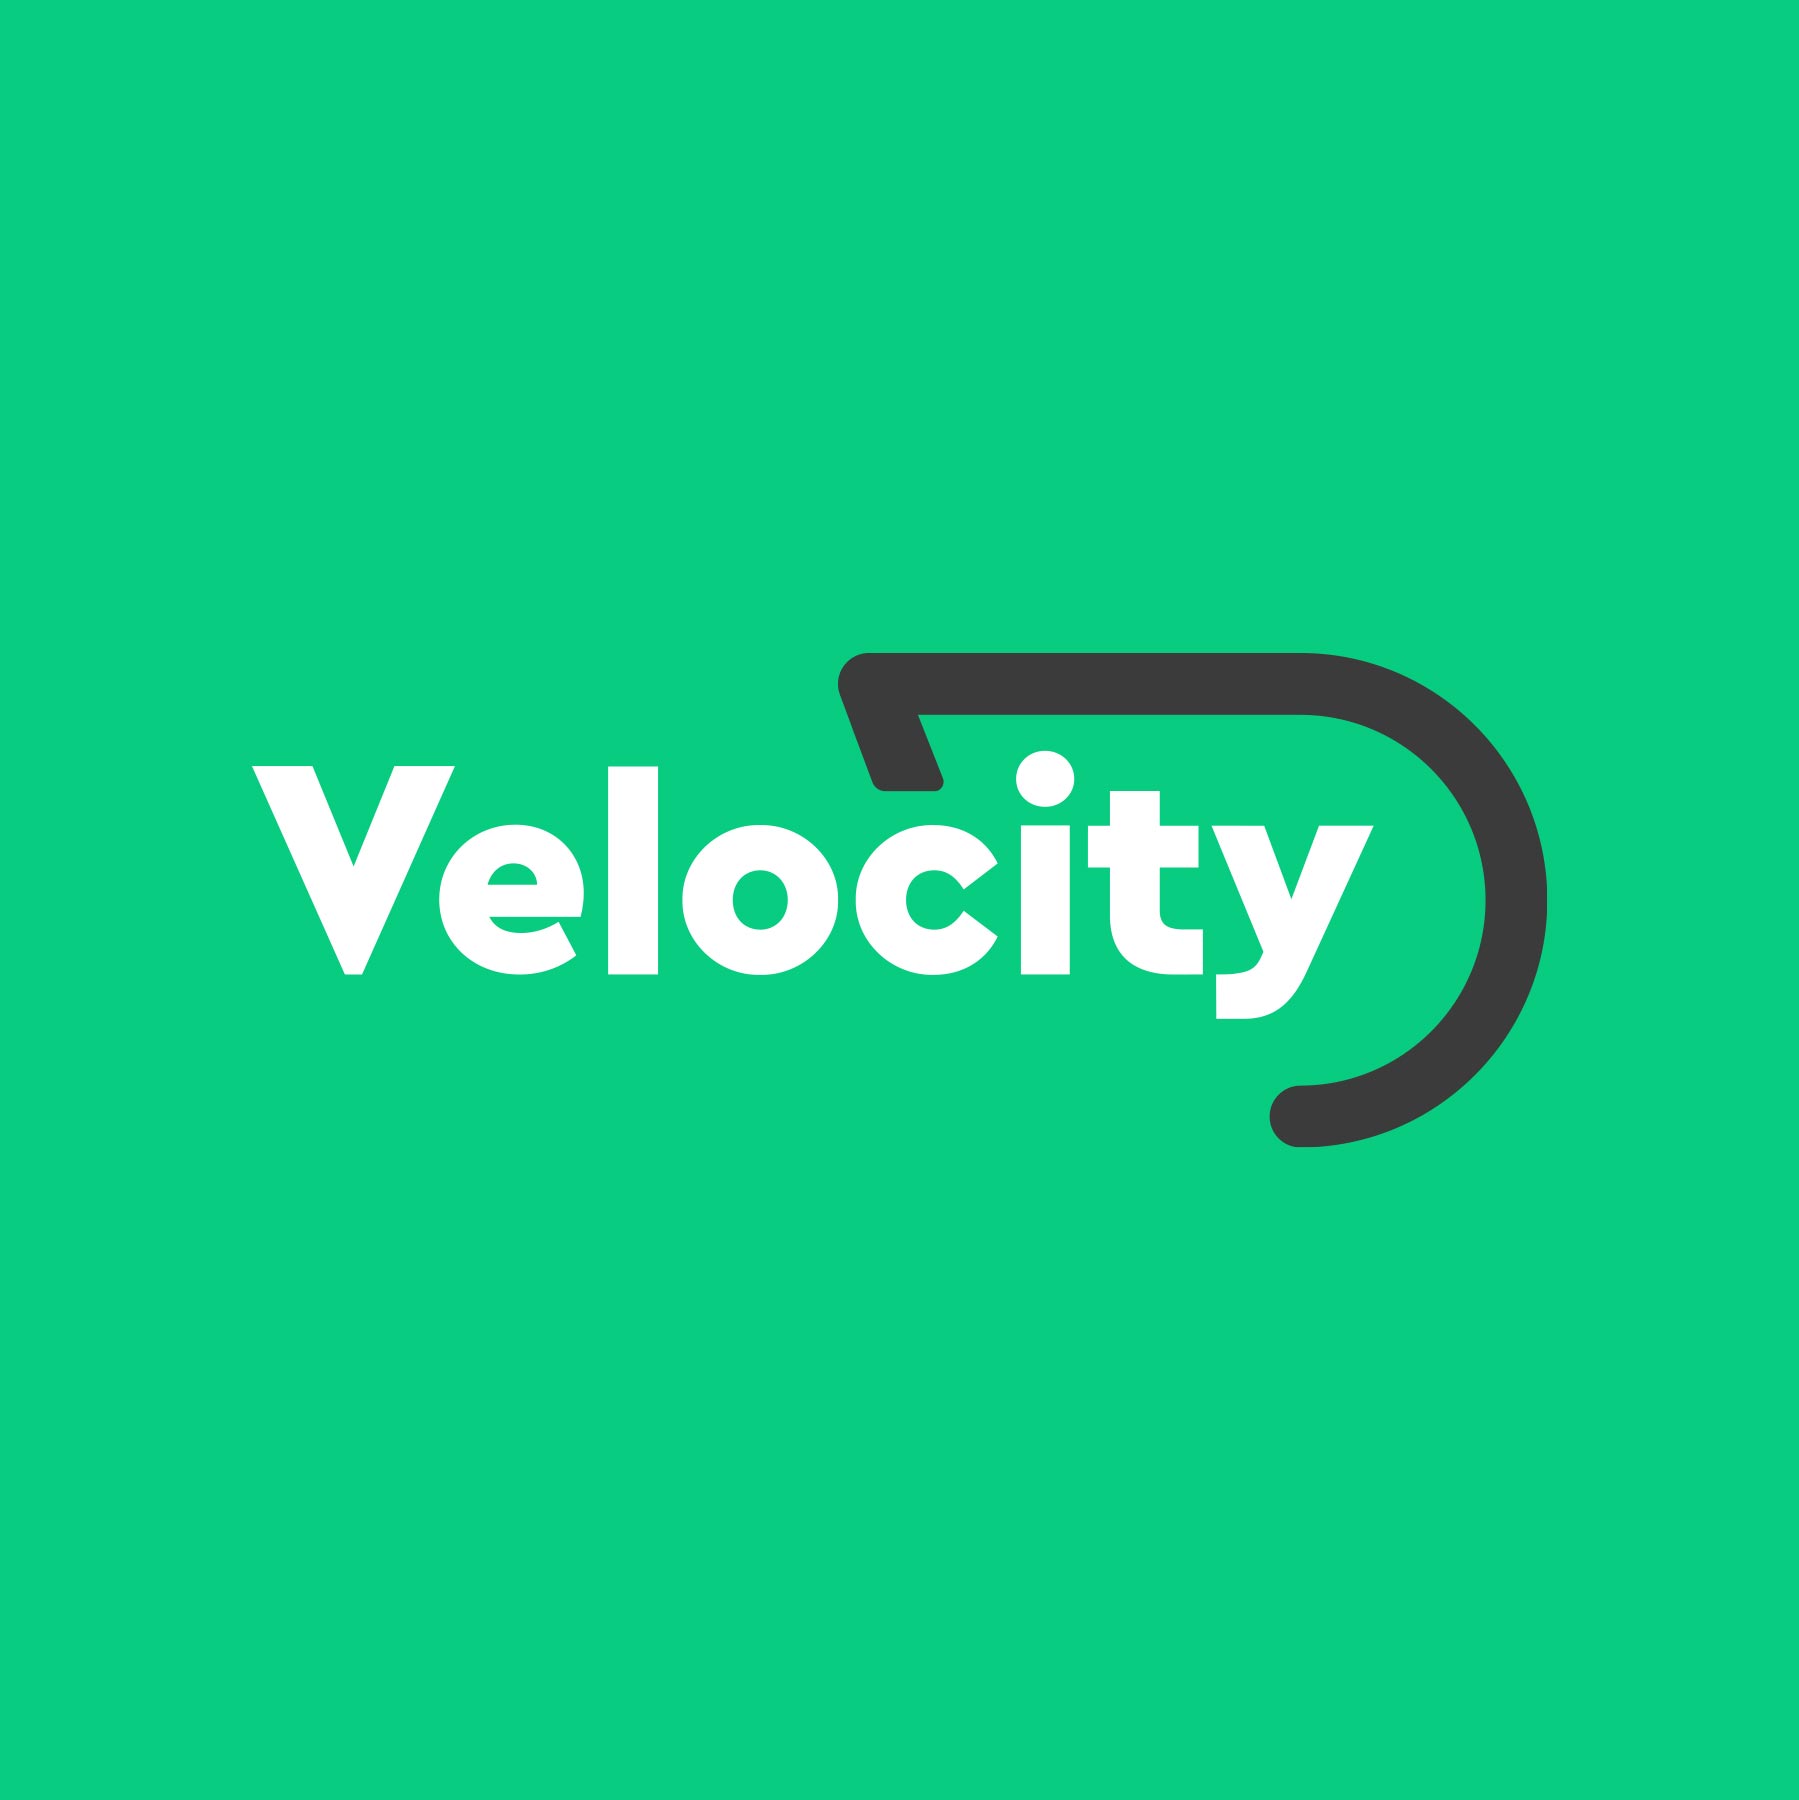 Velocity - Logo op groen